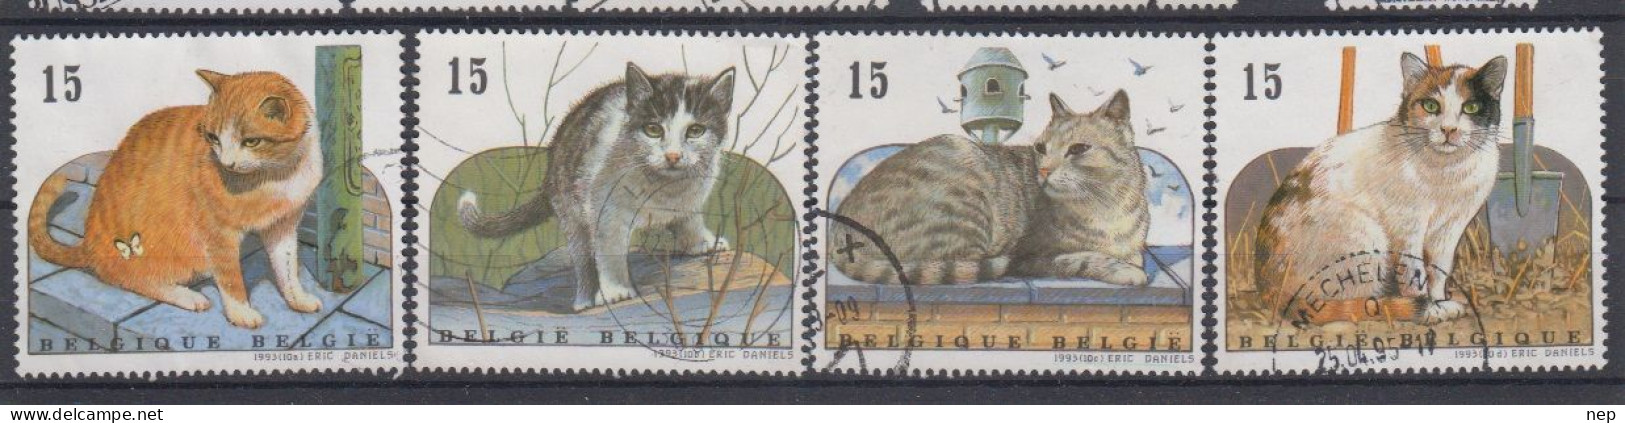 BELGIË - OPB - 1993 - Nr 2521/24 - Gest/Obl/Us - Used Stamps